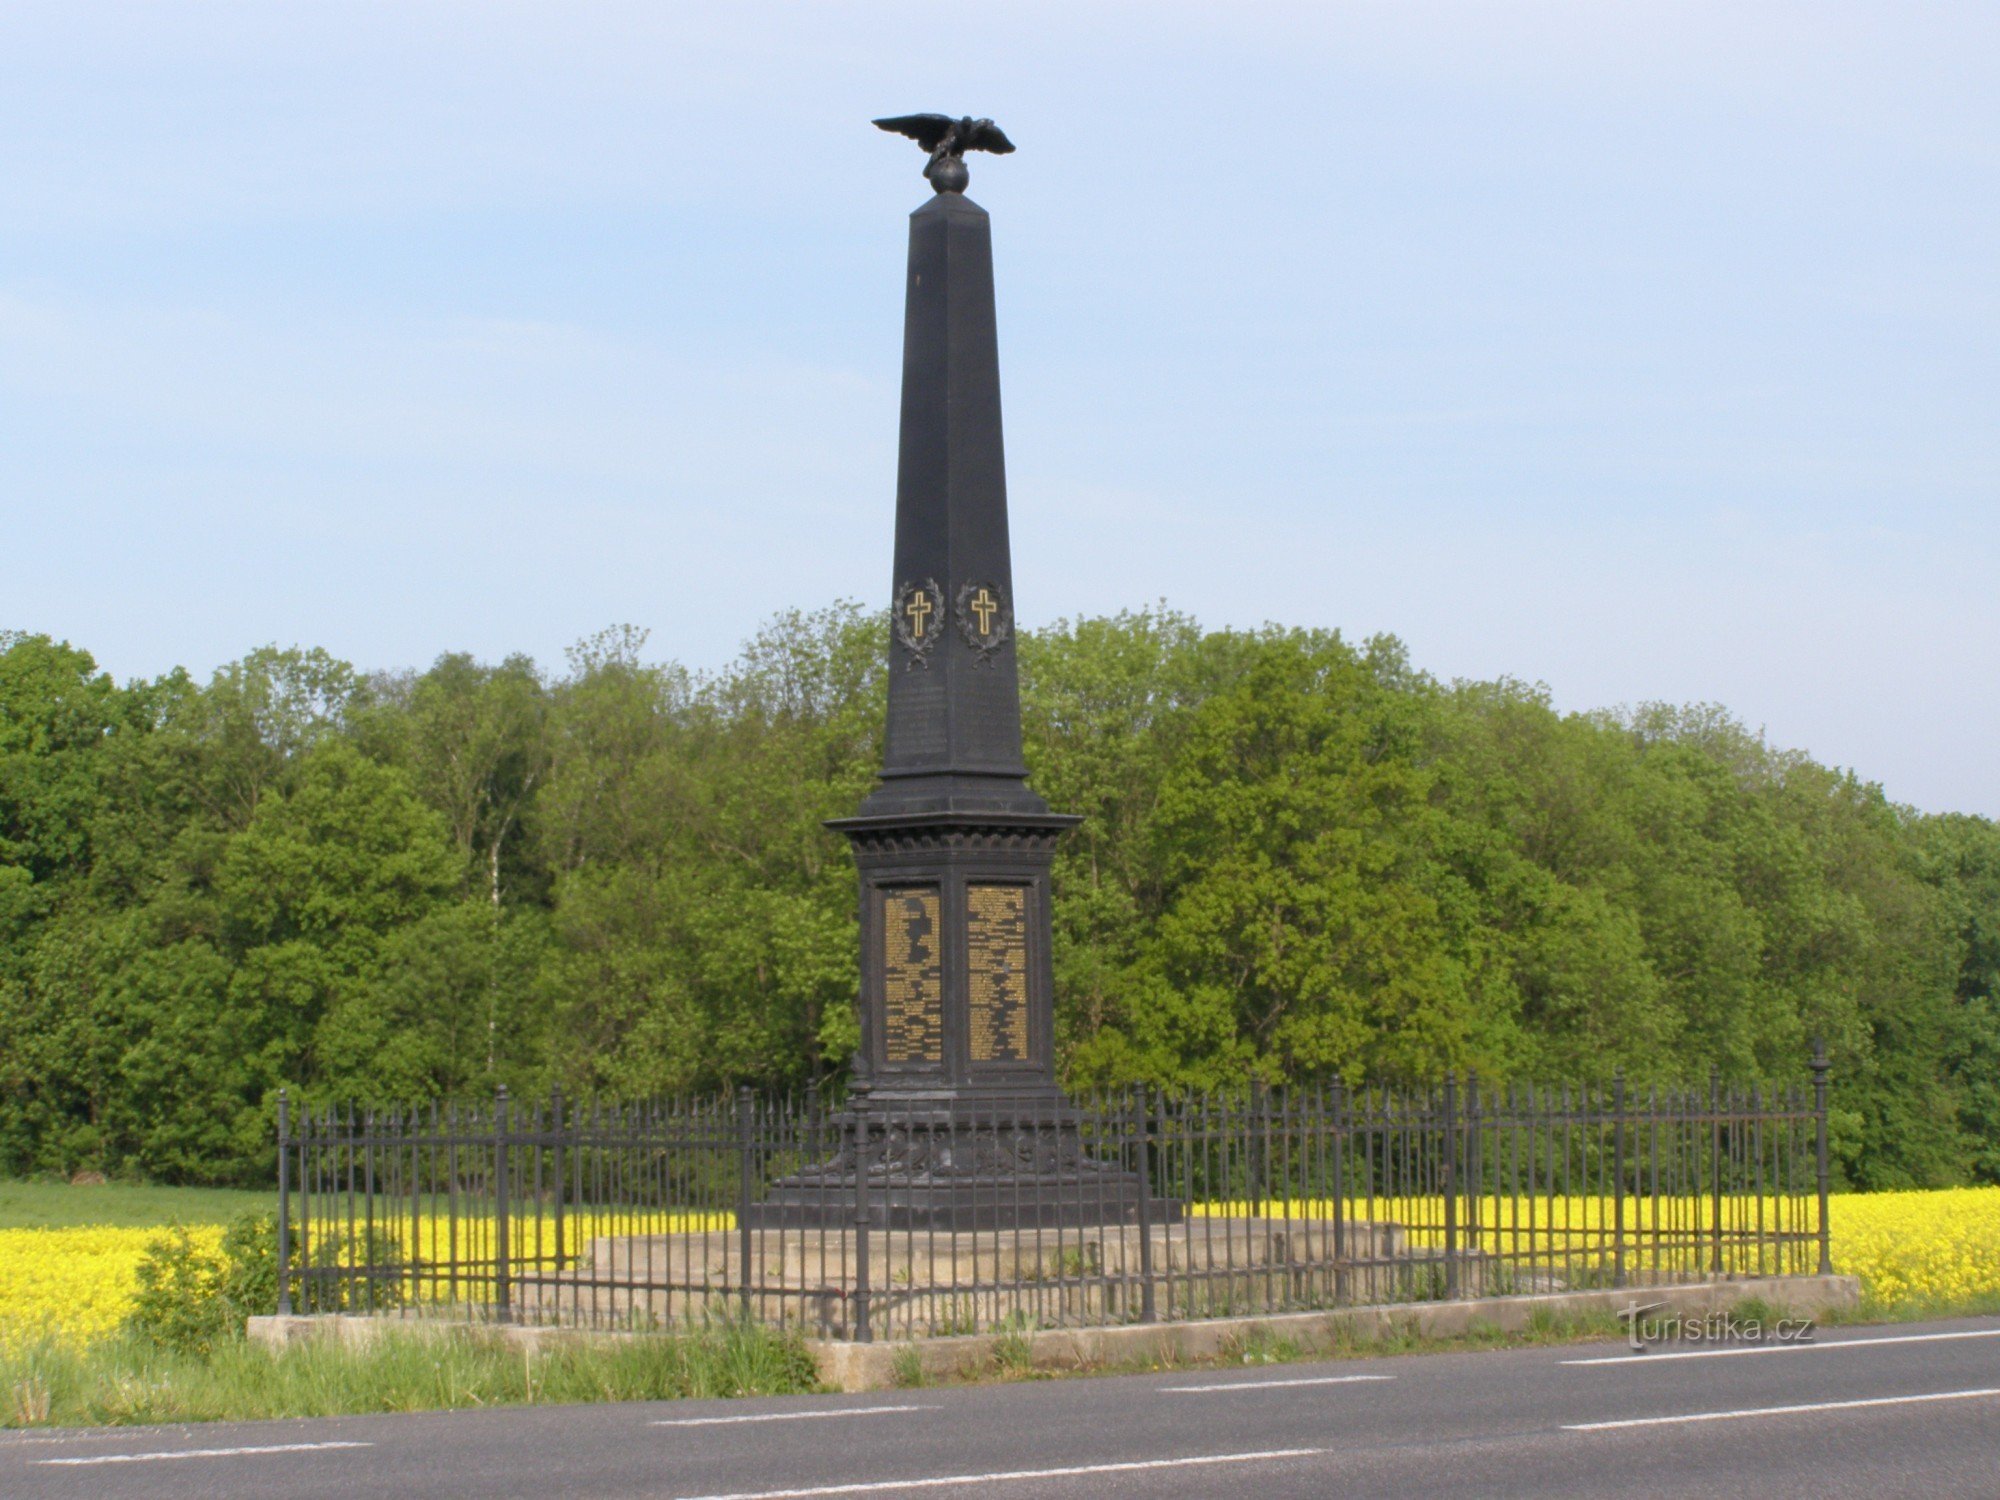 Holá - オーストリア第 49 歩兵連隊の記念碑